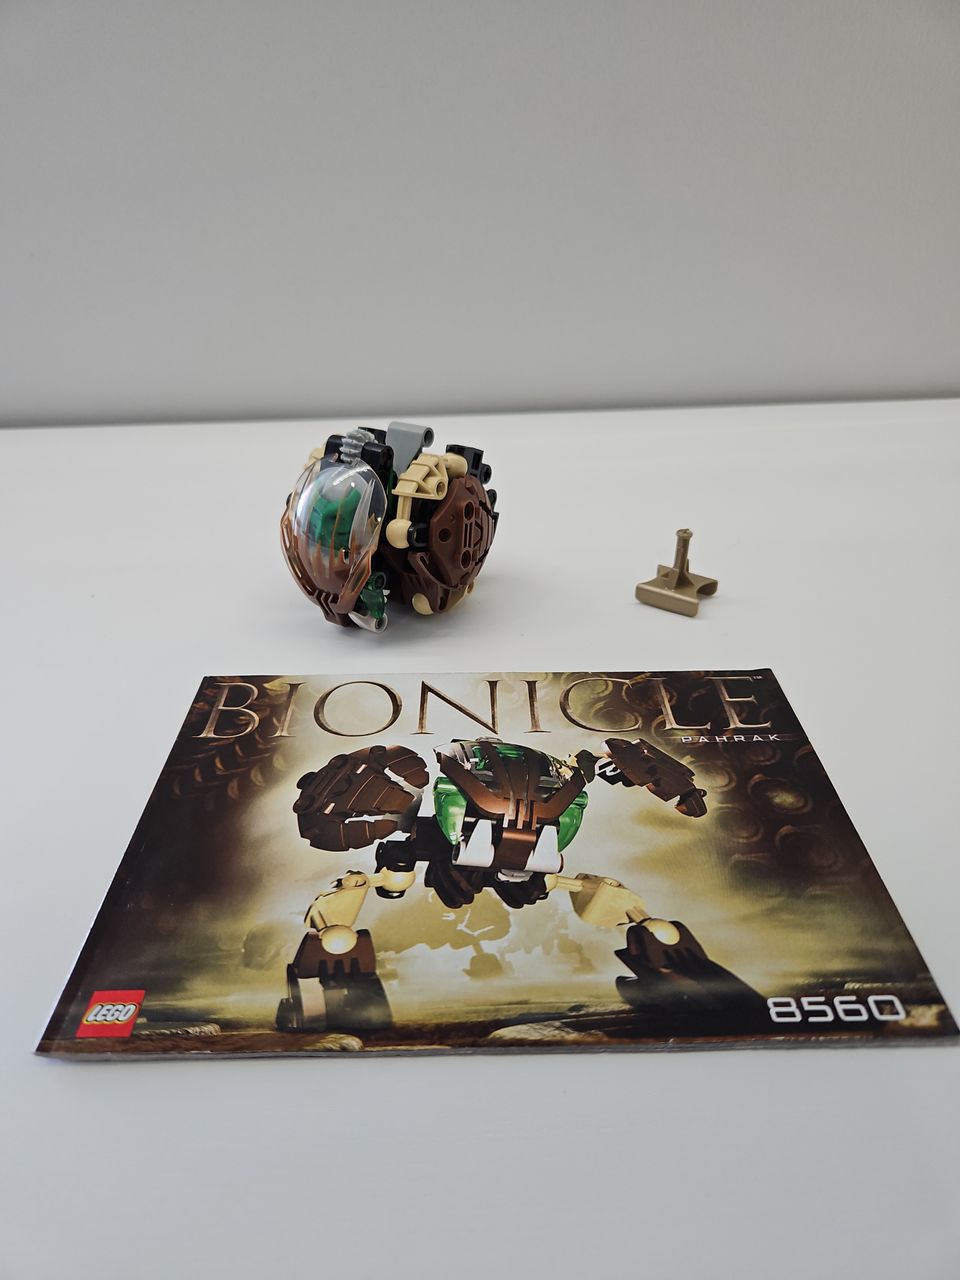 Lego Bionicle 8560: Pahrak